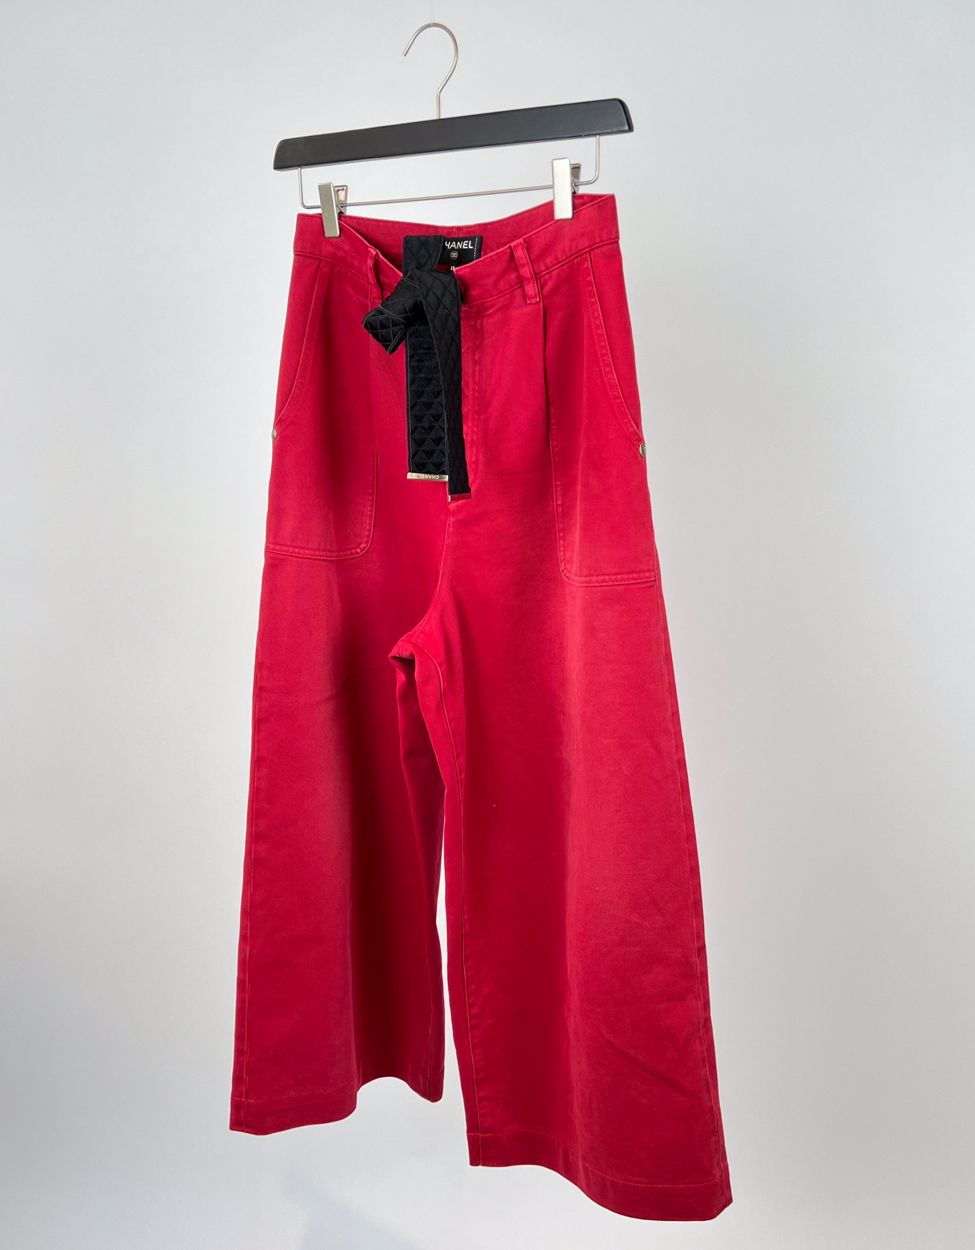 Chanel pants denim culotte size fr38